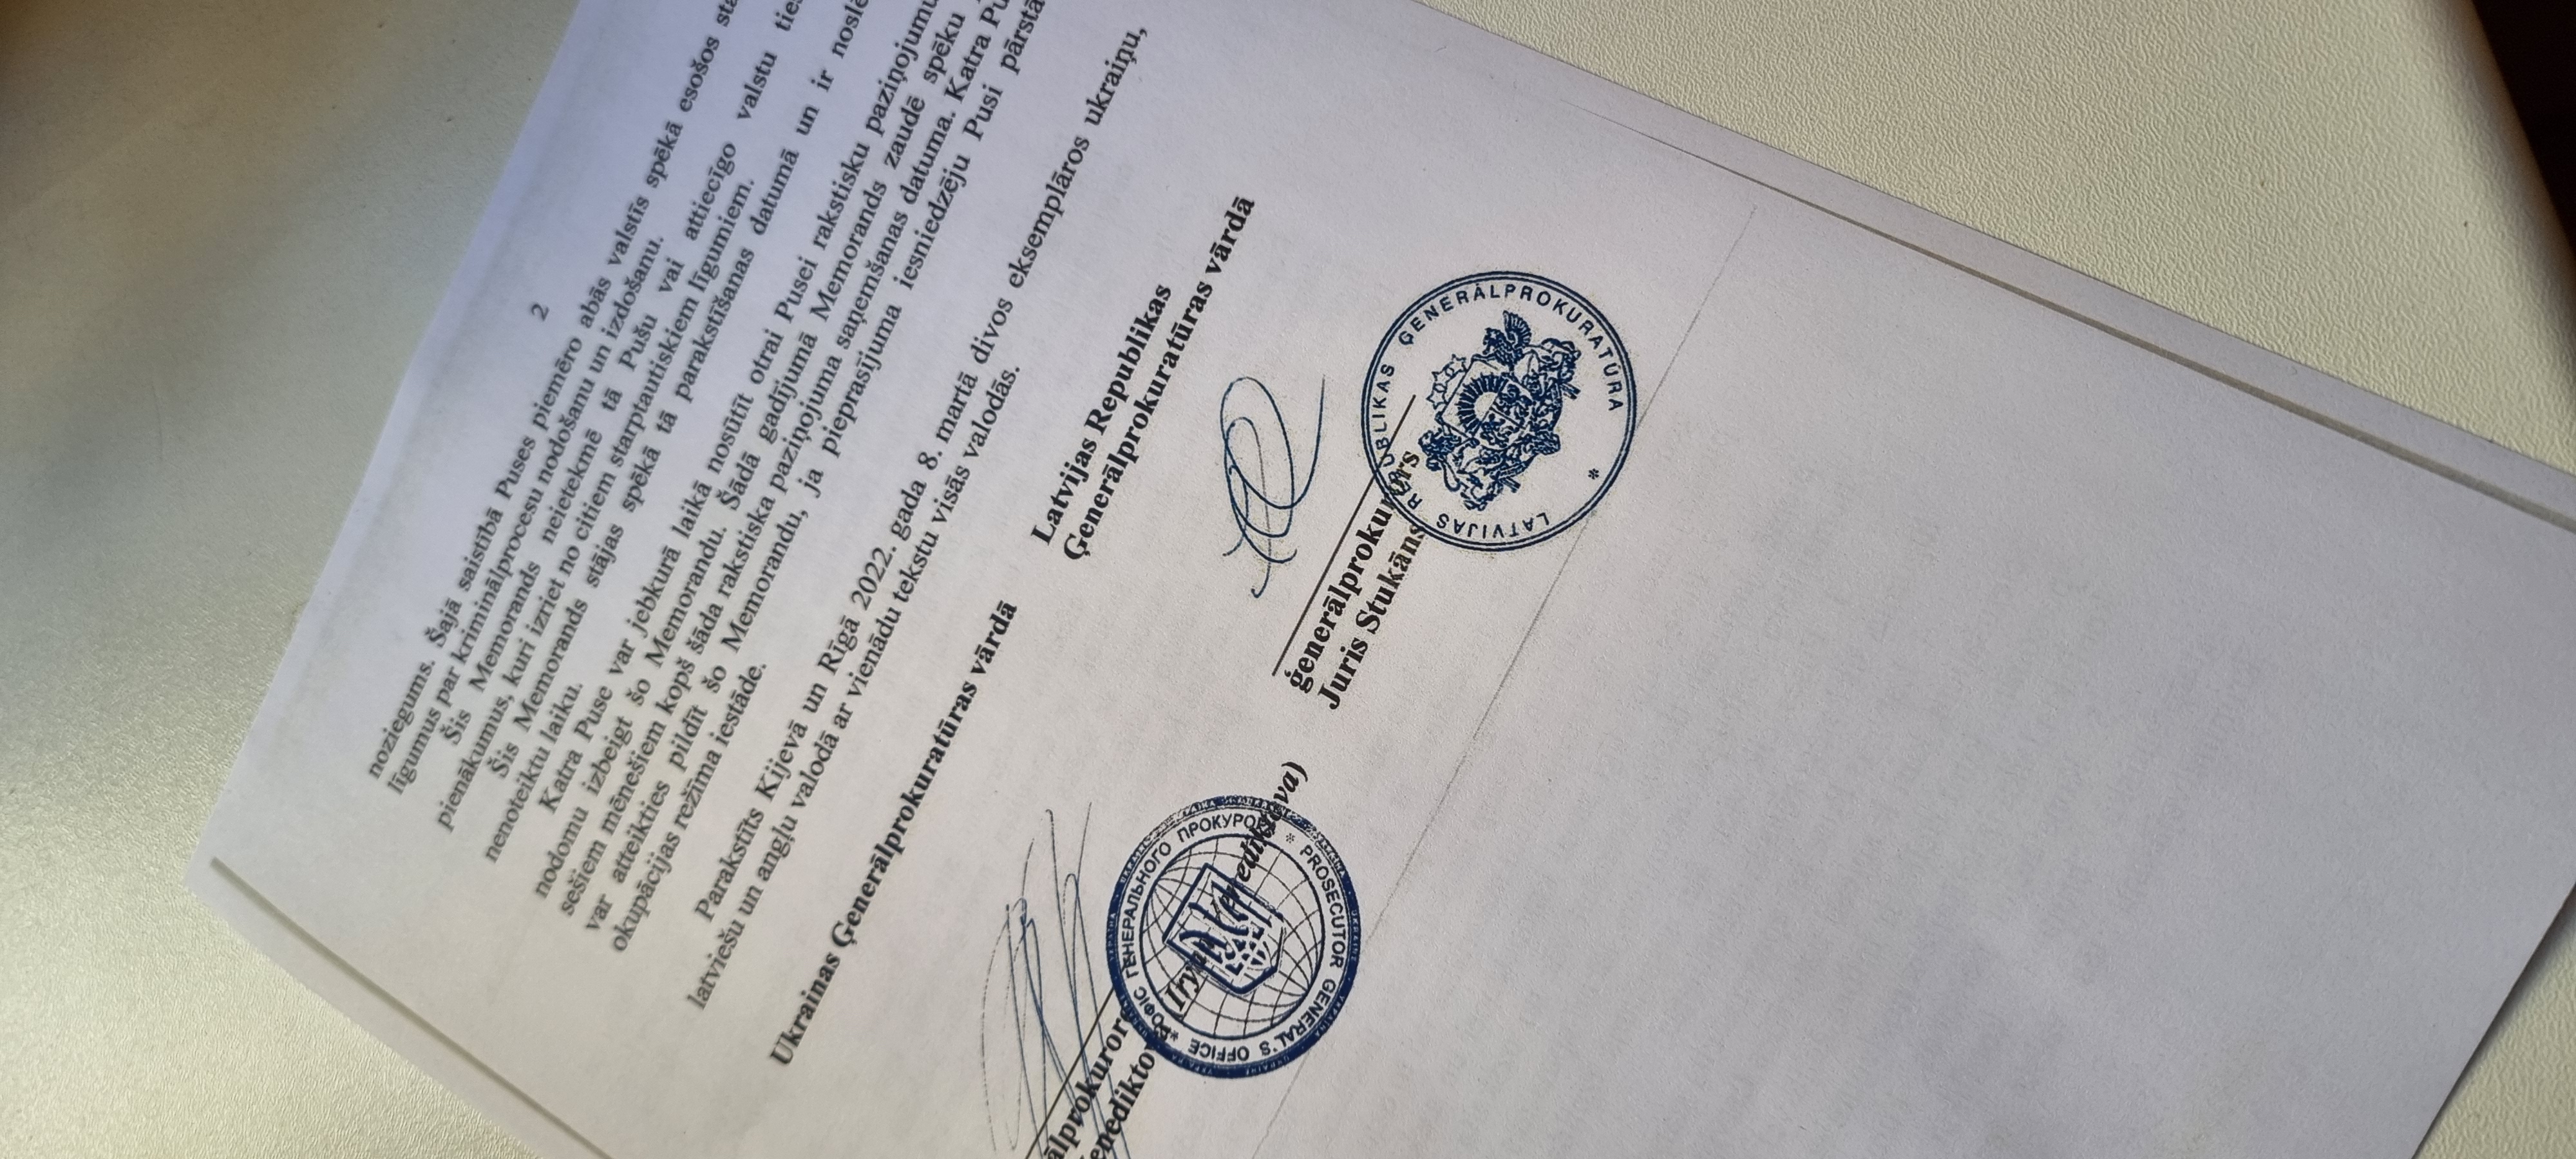 Attēls: Latvijas Republikas Ģenerālprokuratūra noslēgusi Memorandu par sadarbību ar Ukrainas Ģenerālprokuratūru